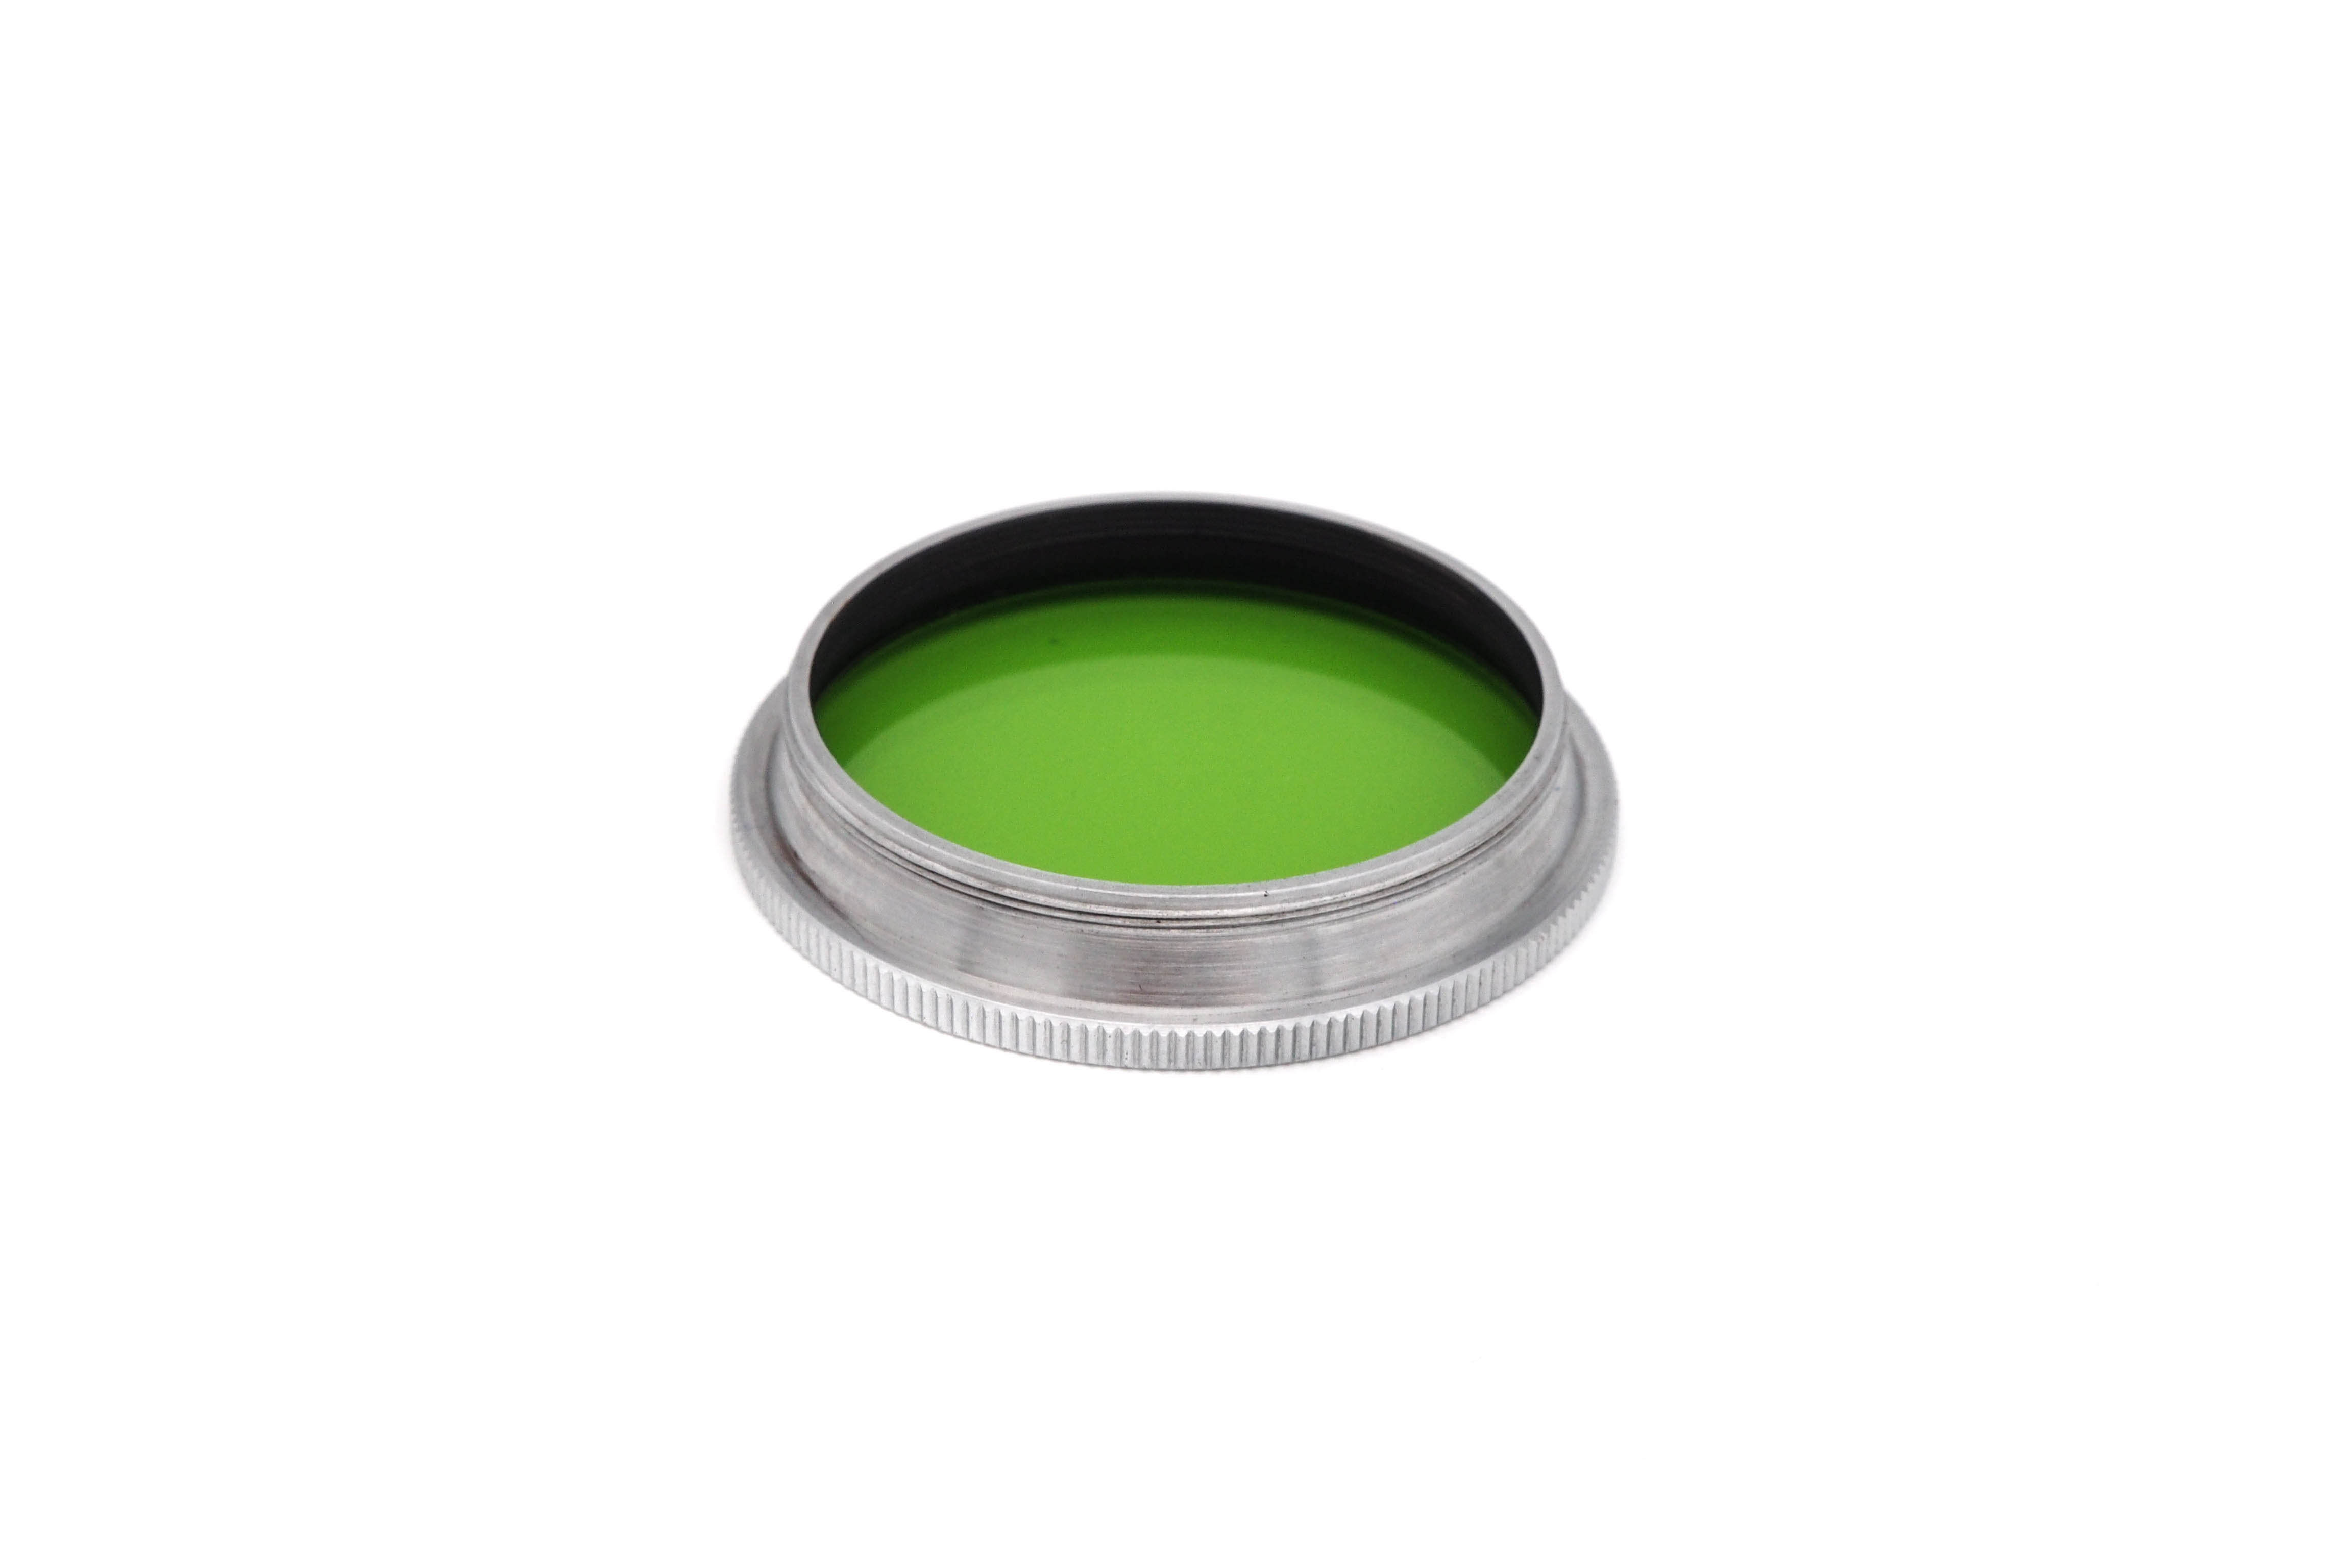 Leitz GCYOO green filter